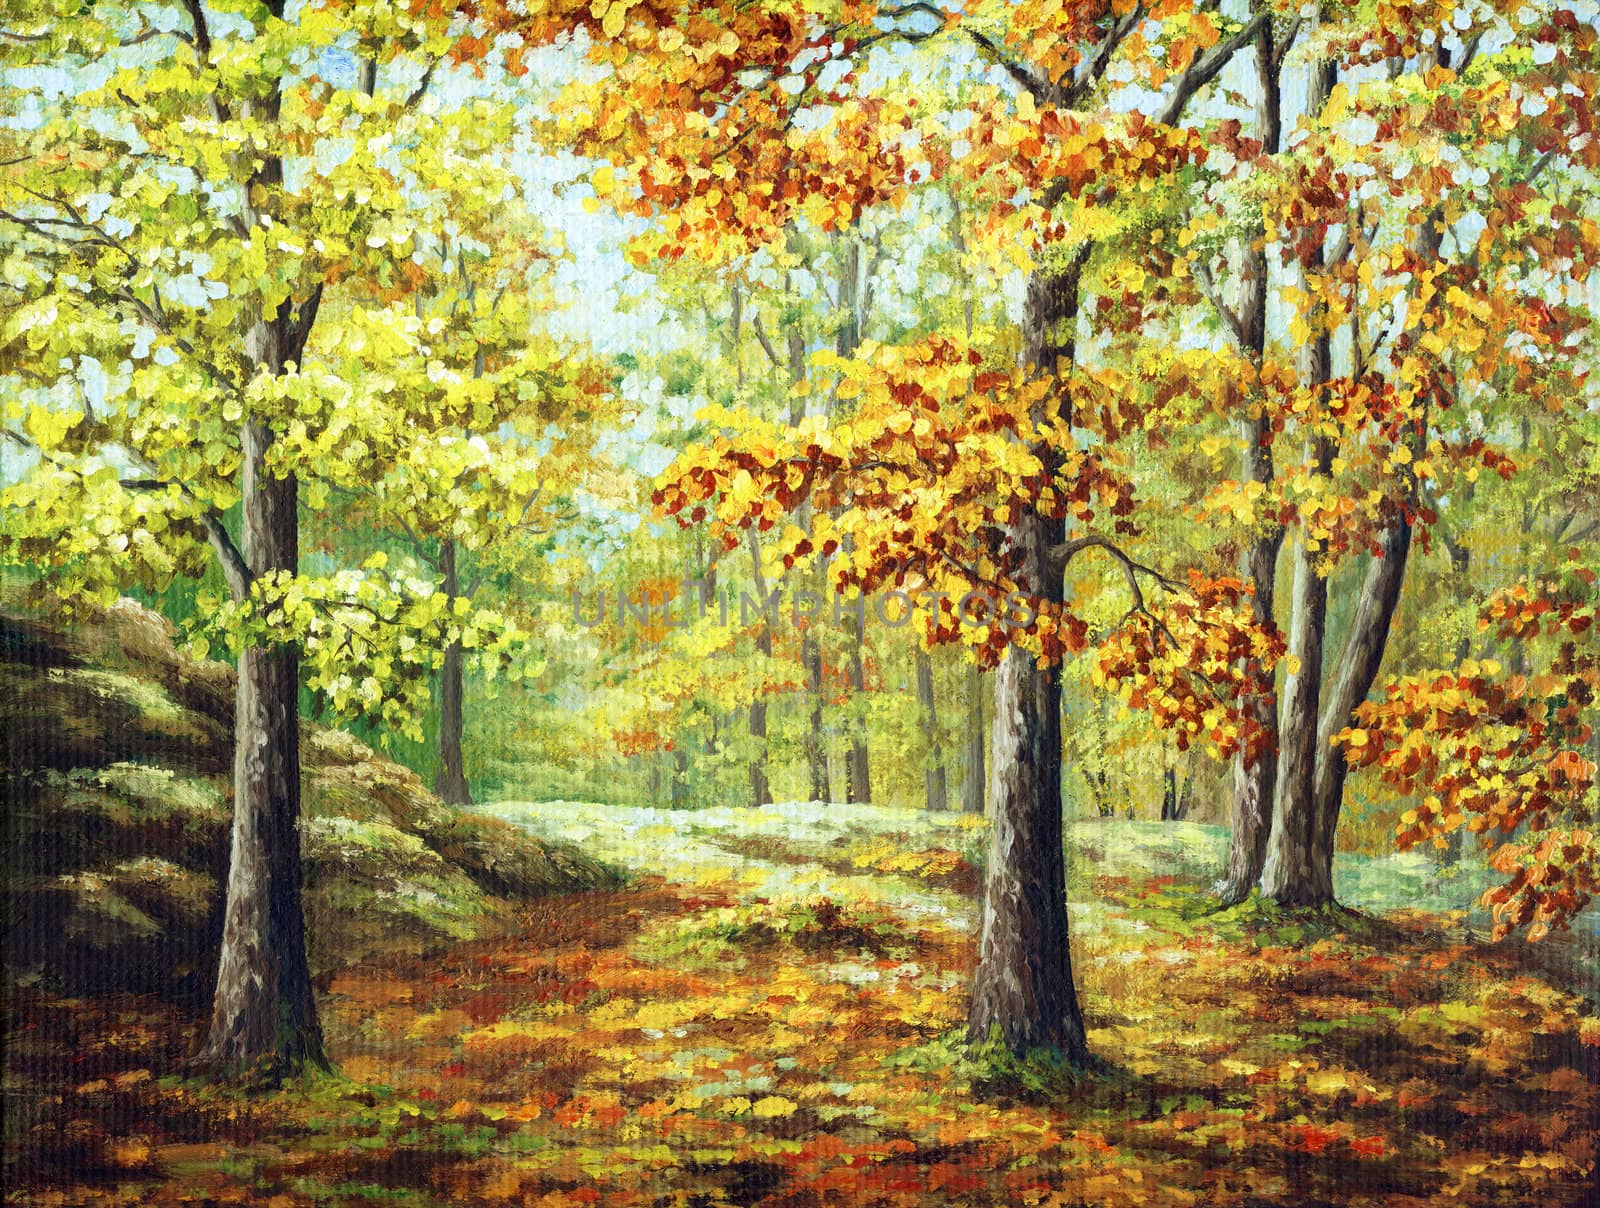 Autumn wood by alexcoolok